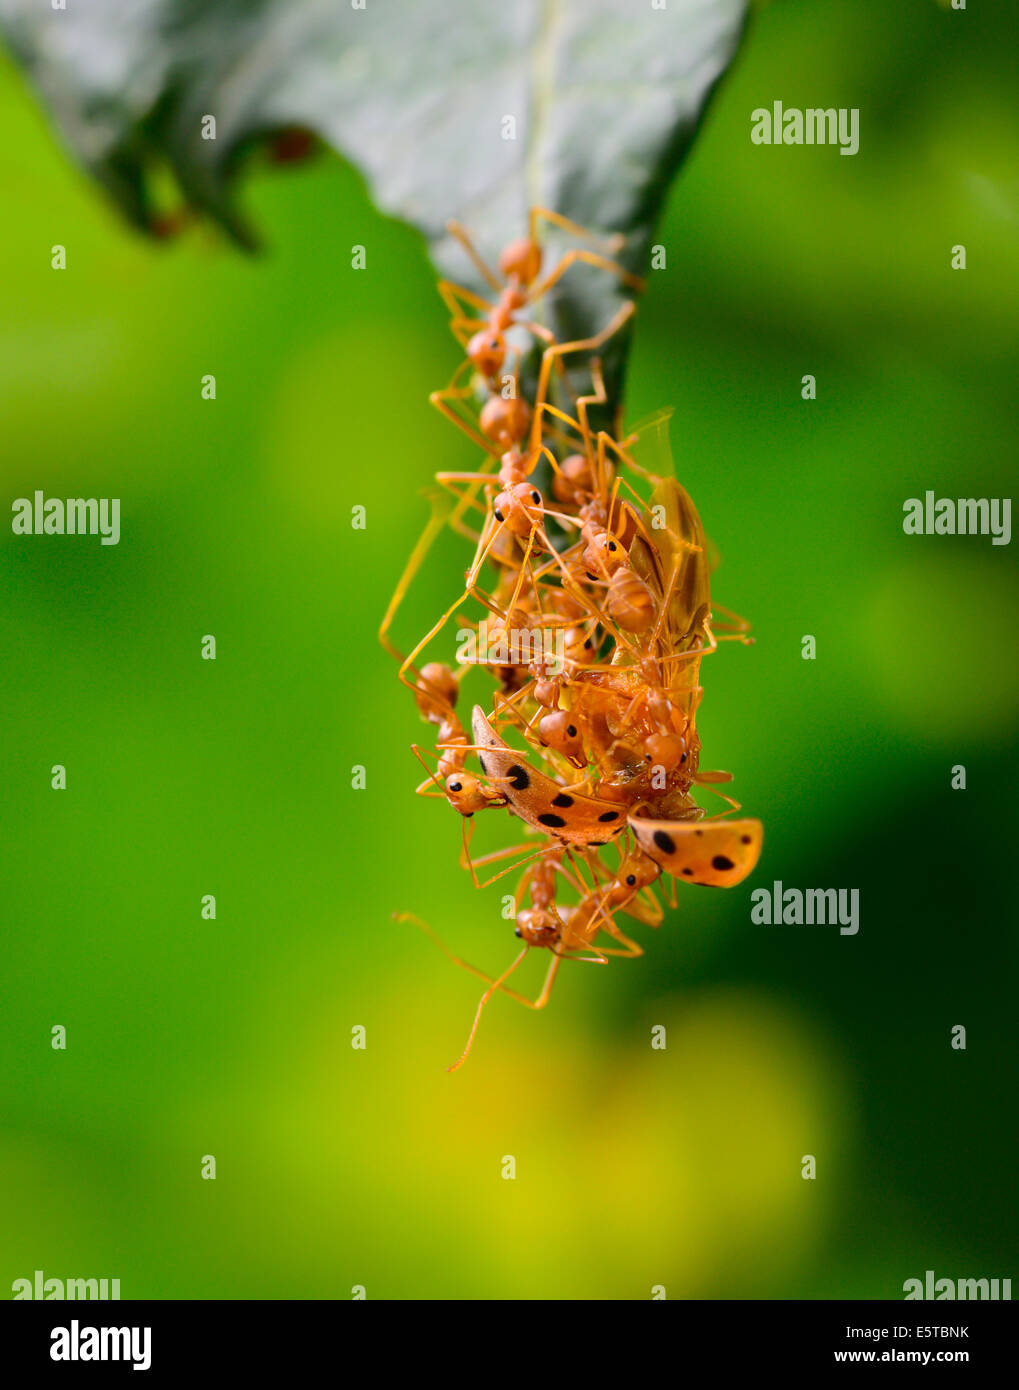 Macro de ejército de hormigas rojas se están volcando ladybug para alimentos en el borde de la hoja ; el enfoque selectivo en ala de ladybug con blur backg verde Foto de stock